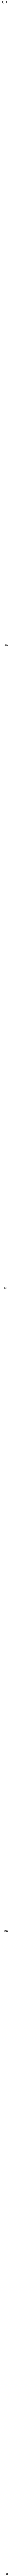 Cobalt lithium manganese nickel oxide (Co0.2LiMn0.3Ni0.5O2) Struktur